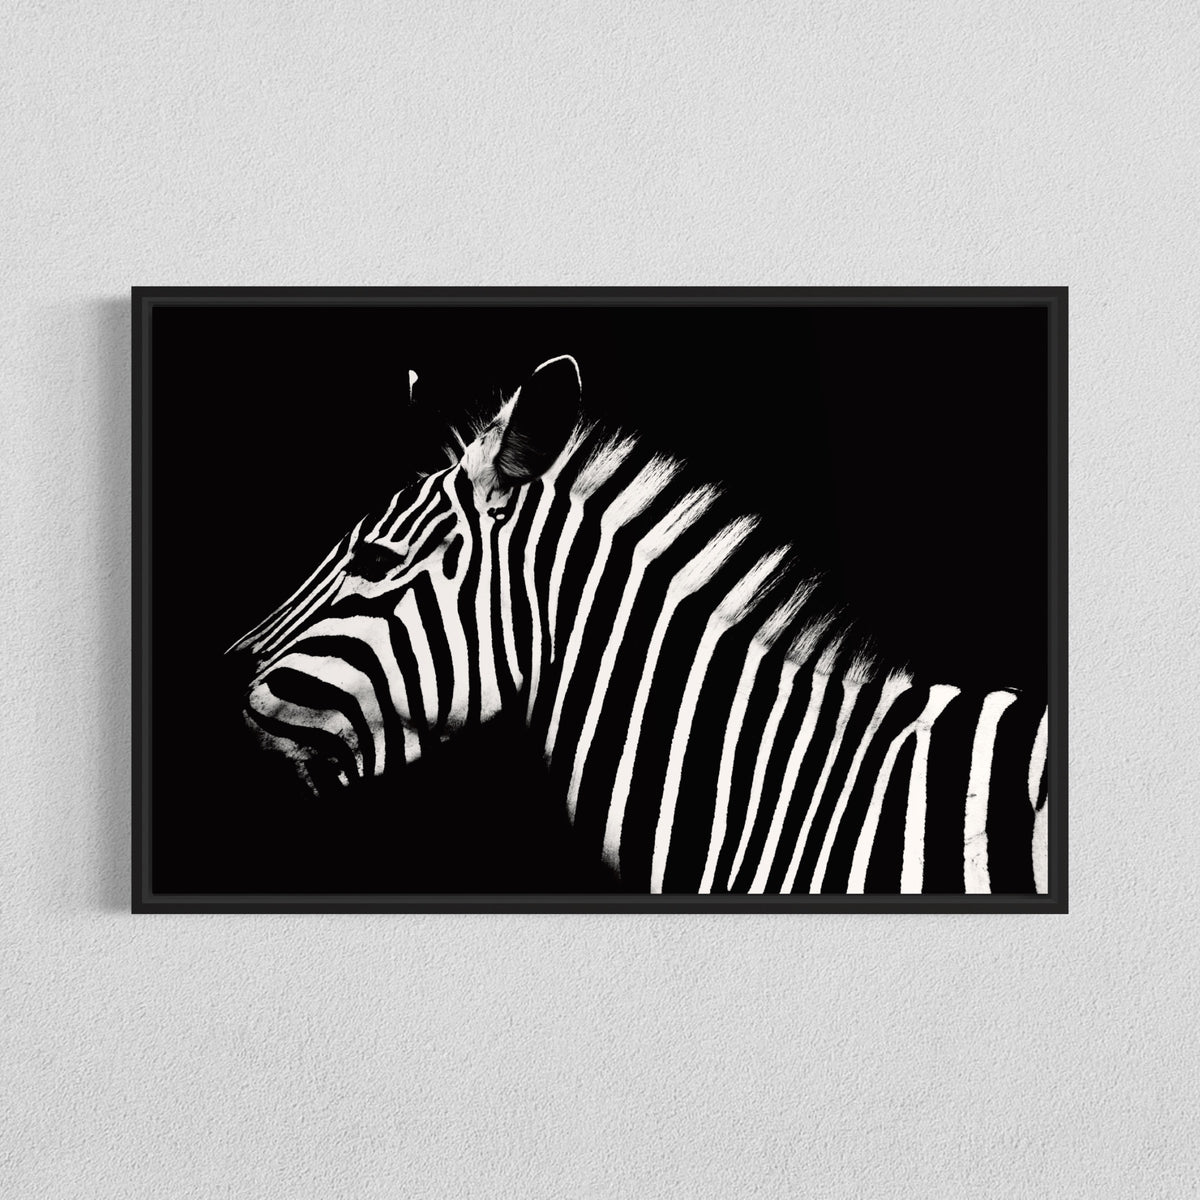 Zebra or Stripes?